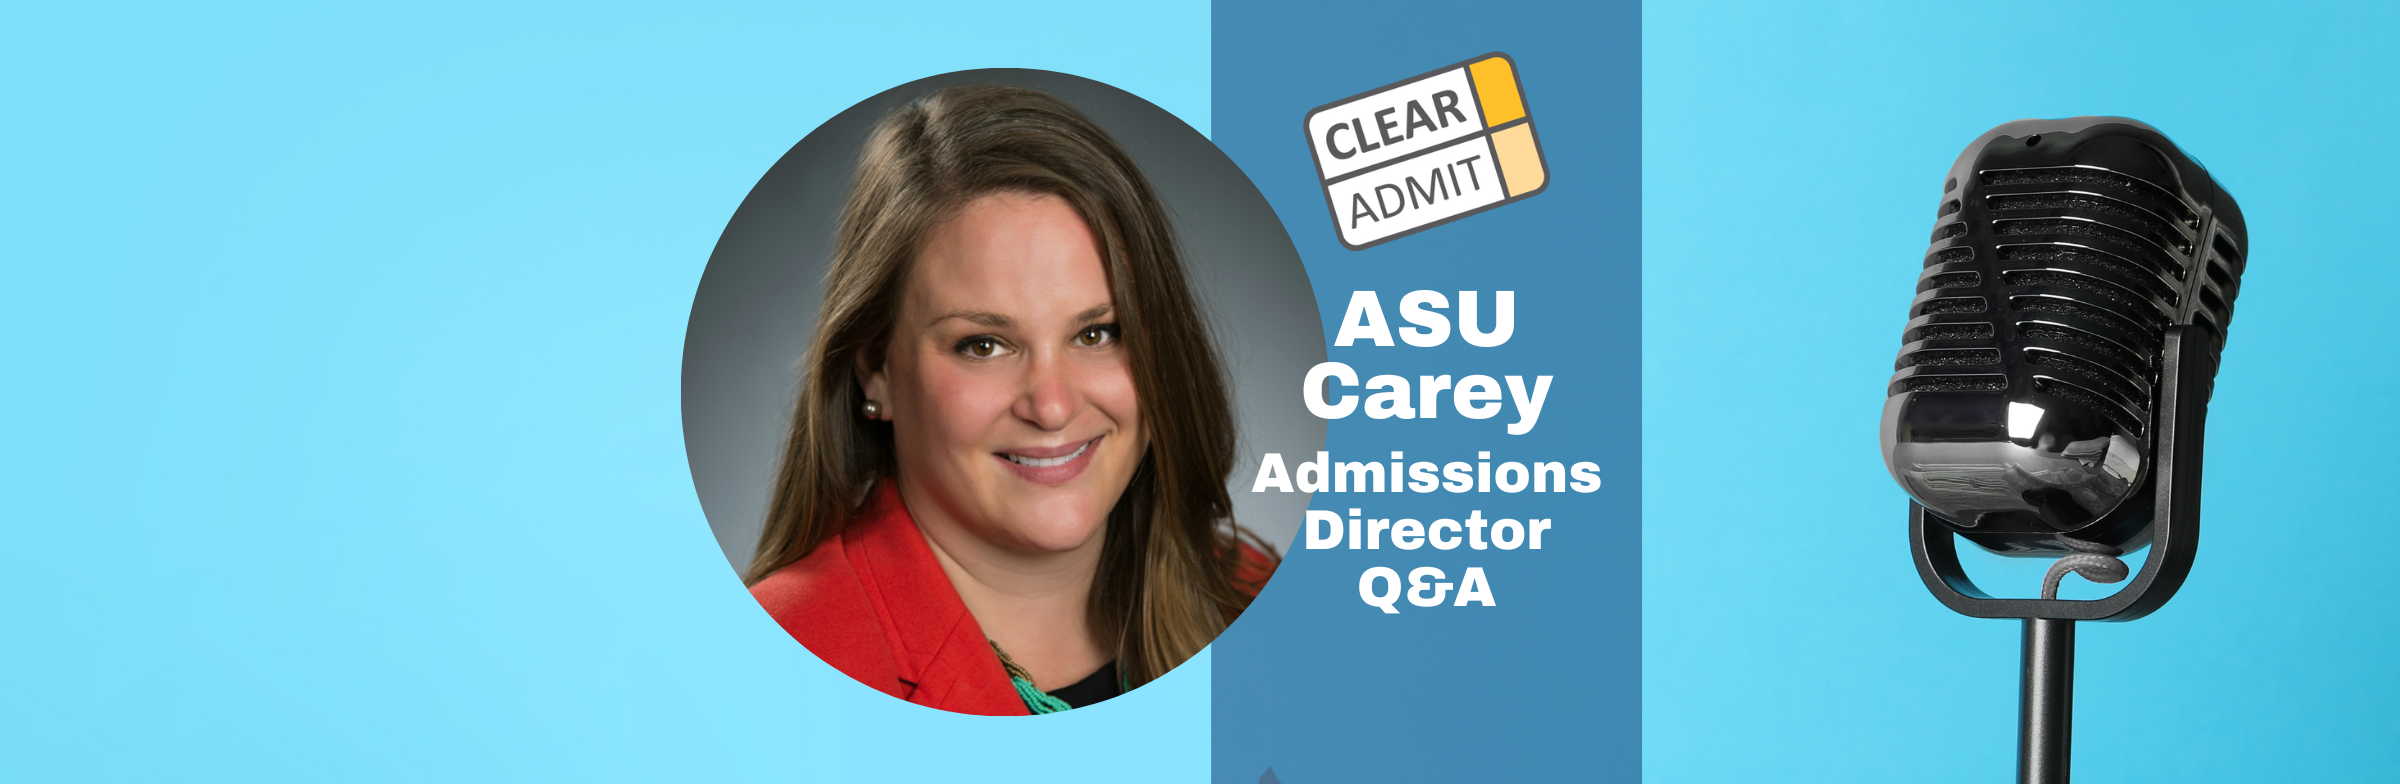 Image for Admissions Director Q&A: Rebecca Mallen-Churchill of ASU Carey